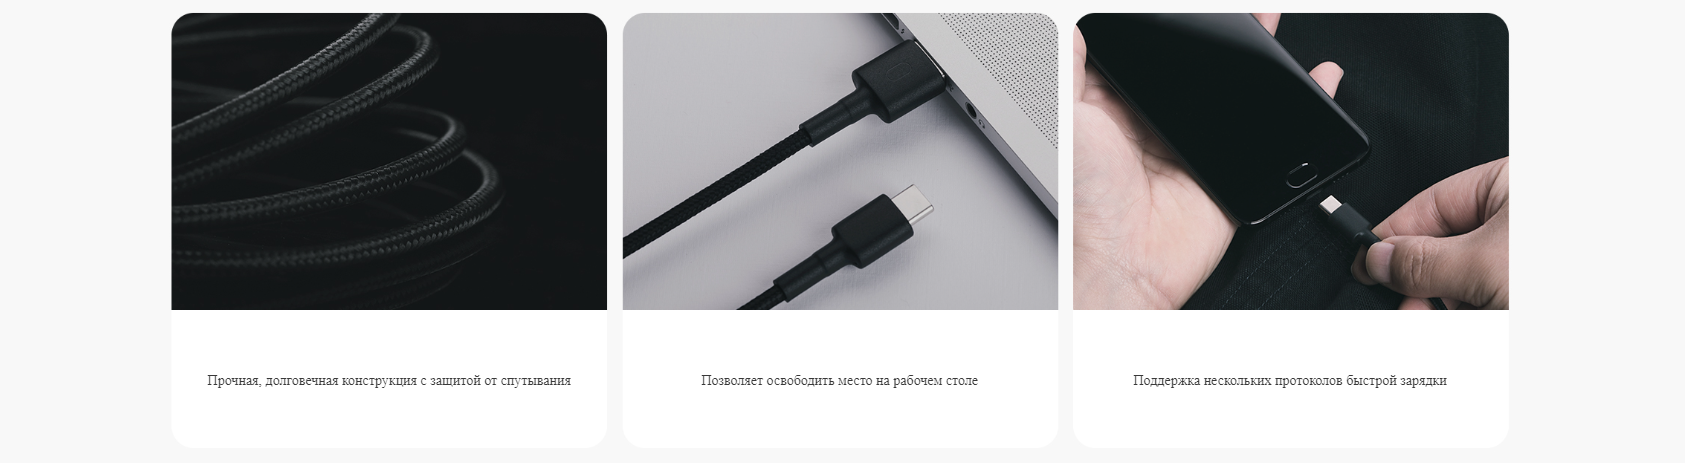 Кабель Mi Braided USB Type-C Cable 100 см Black (SJV4109GL)